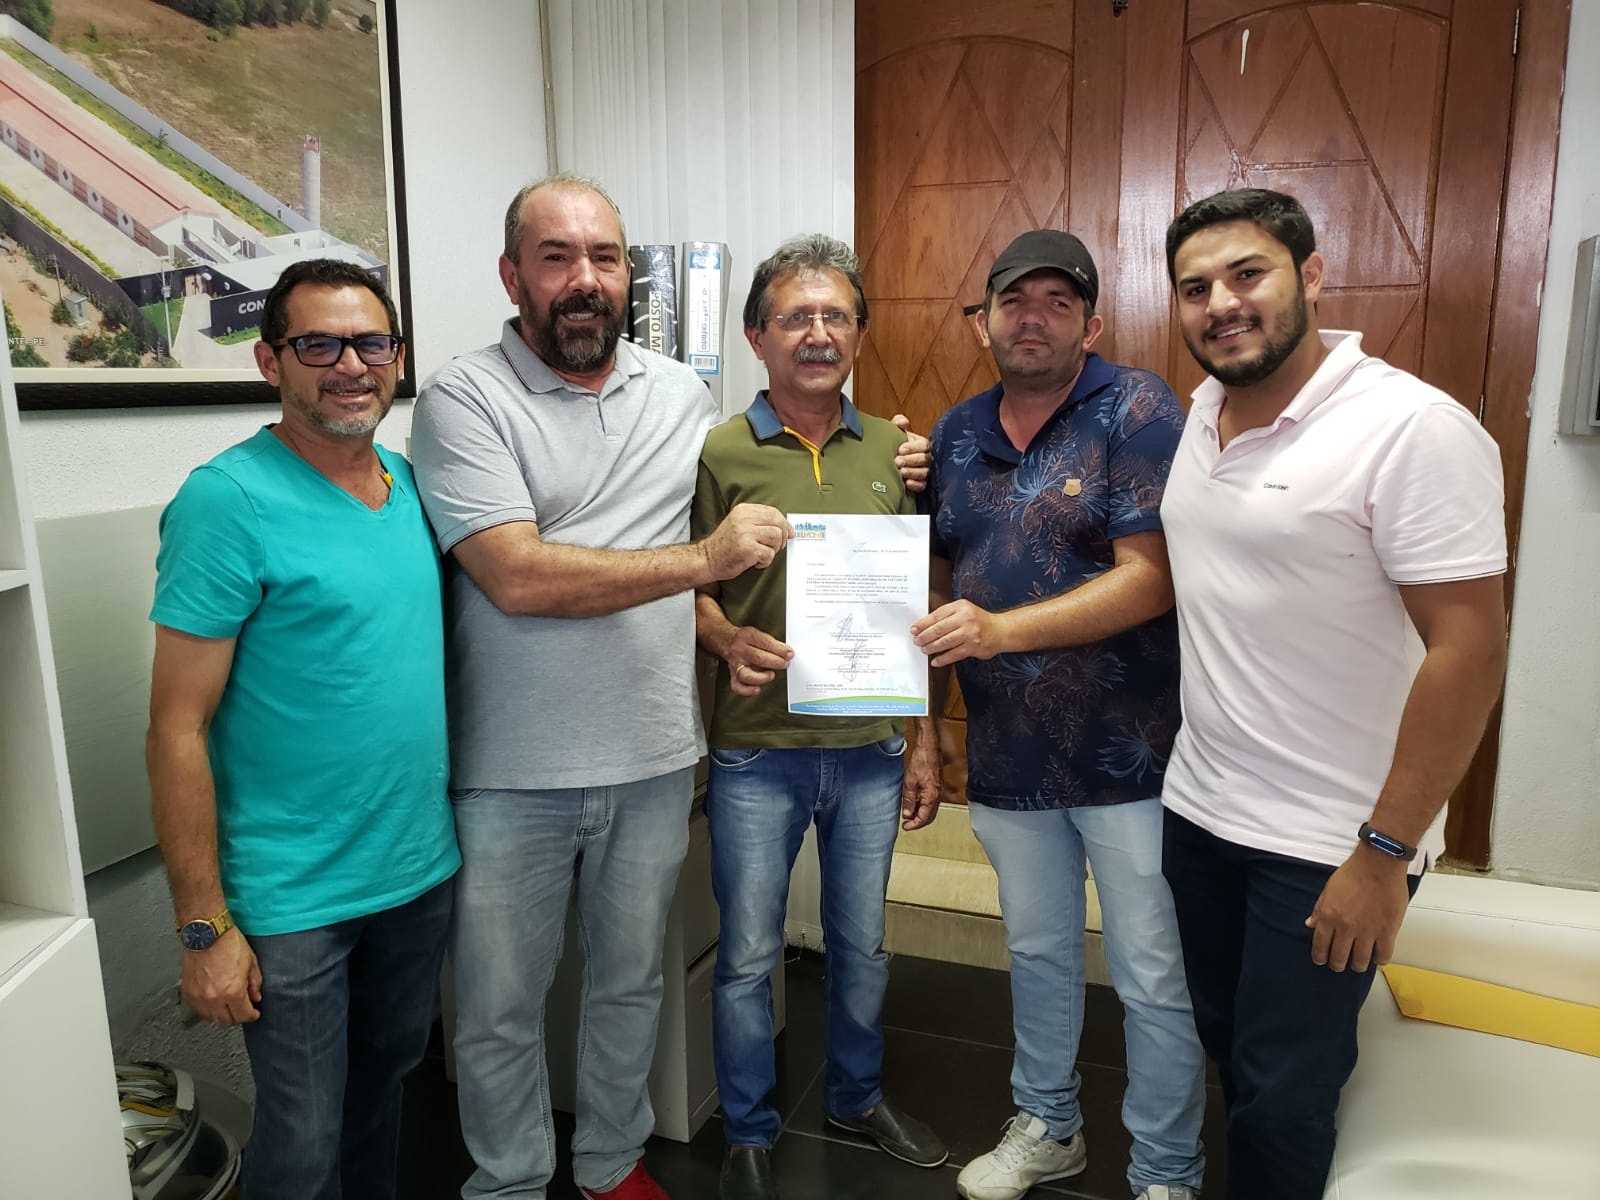 Assinada a ordem de serviço da construção do estádio "Marianão" no Distrito do Carmo.